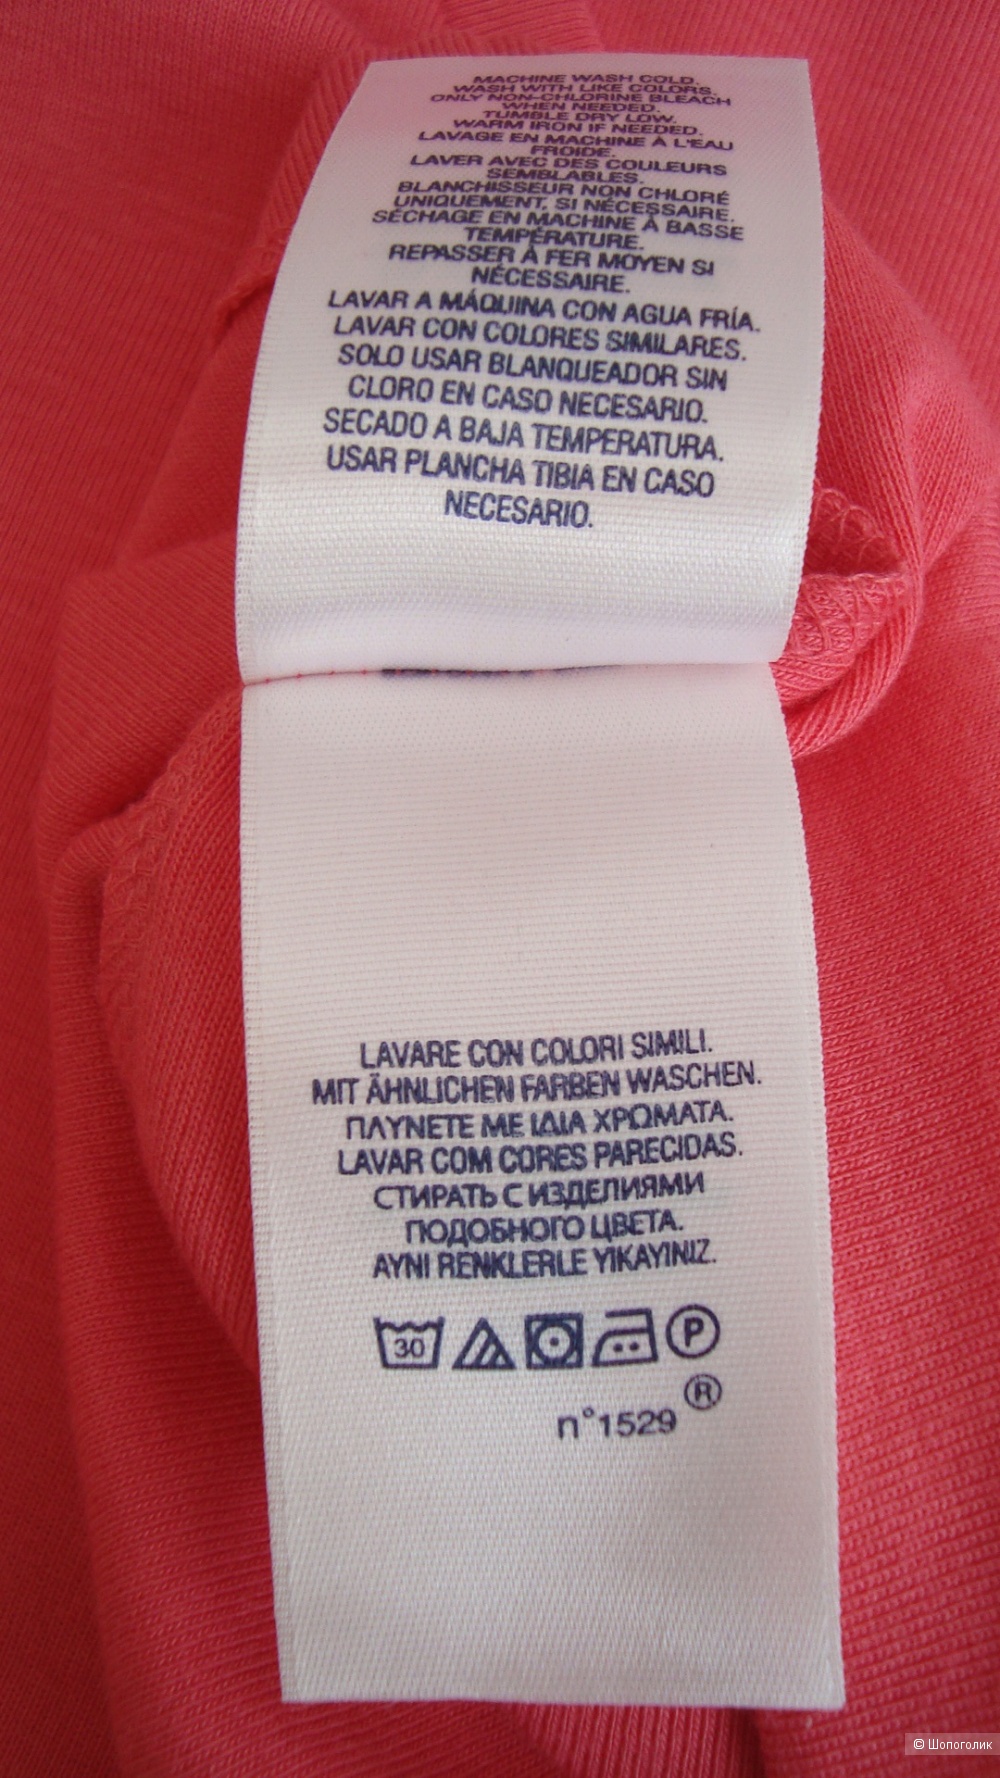 Детская футболка Ralph Lauren, размер: XL (16)